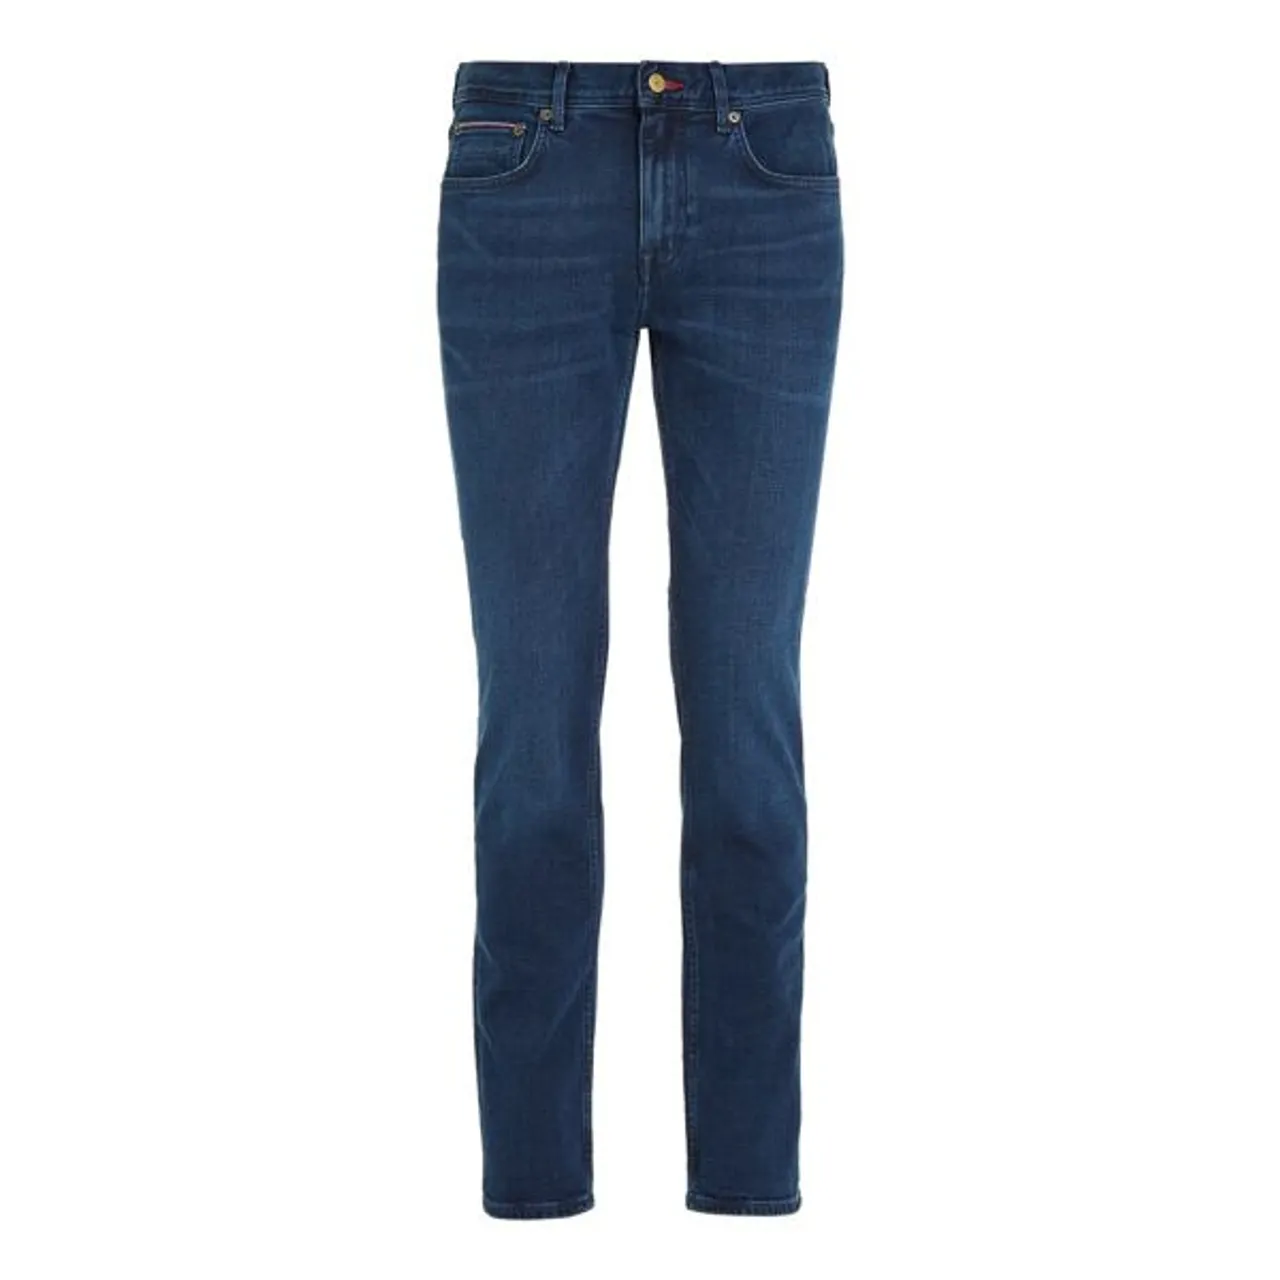 Straight-Jeans TOMMY HILFIGER "Denton" Gr. 40, Länge 30, blau (bridger indigo) Herren Jeans Straight Fit Bestseller